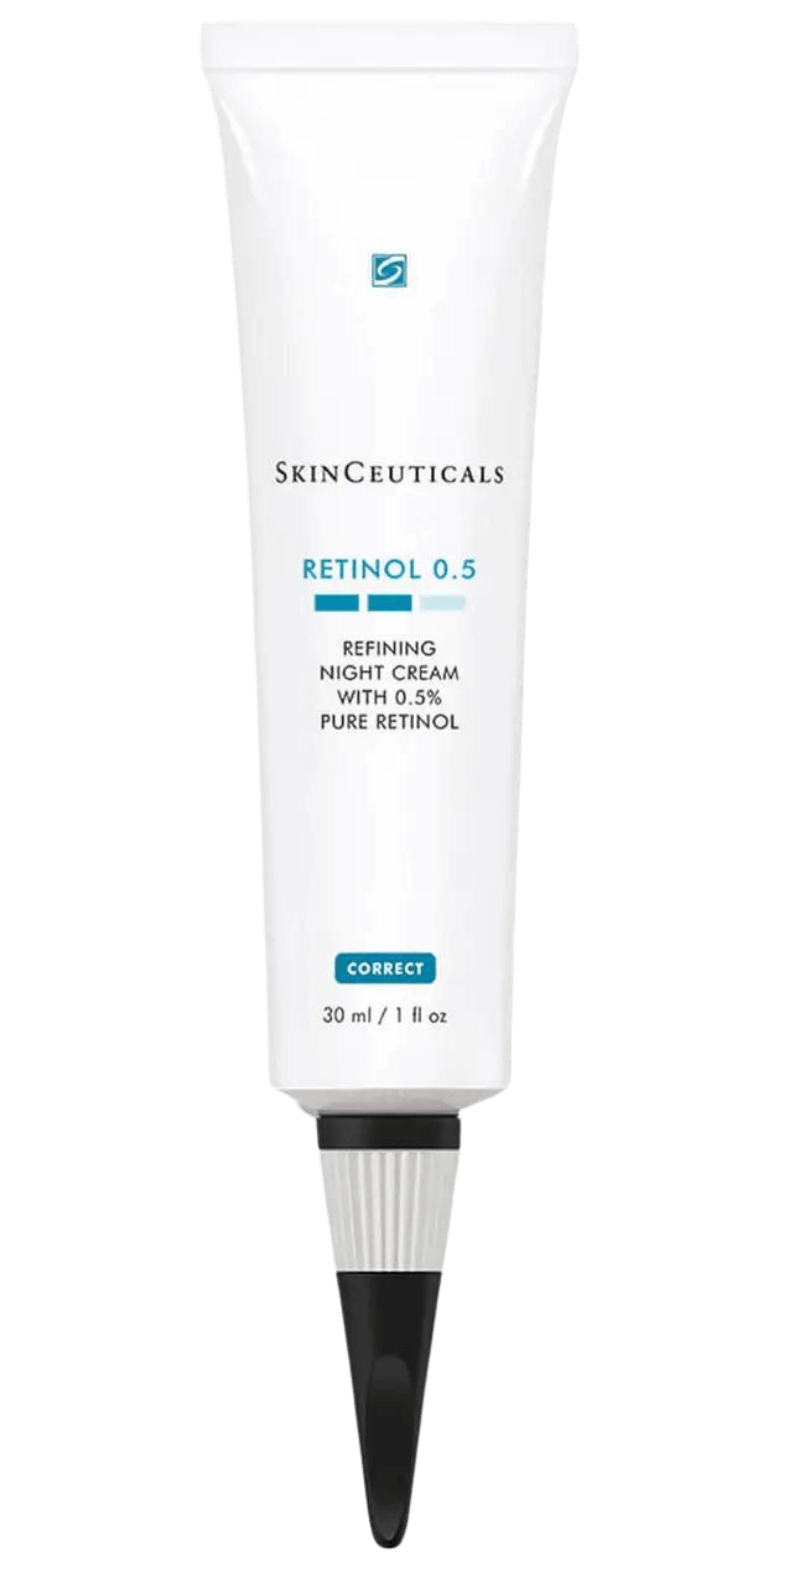 SkinCeuticals 0.5 – Skin Parfumerie